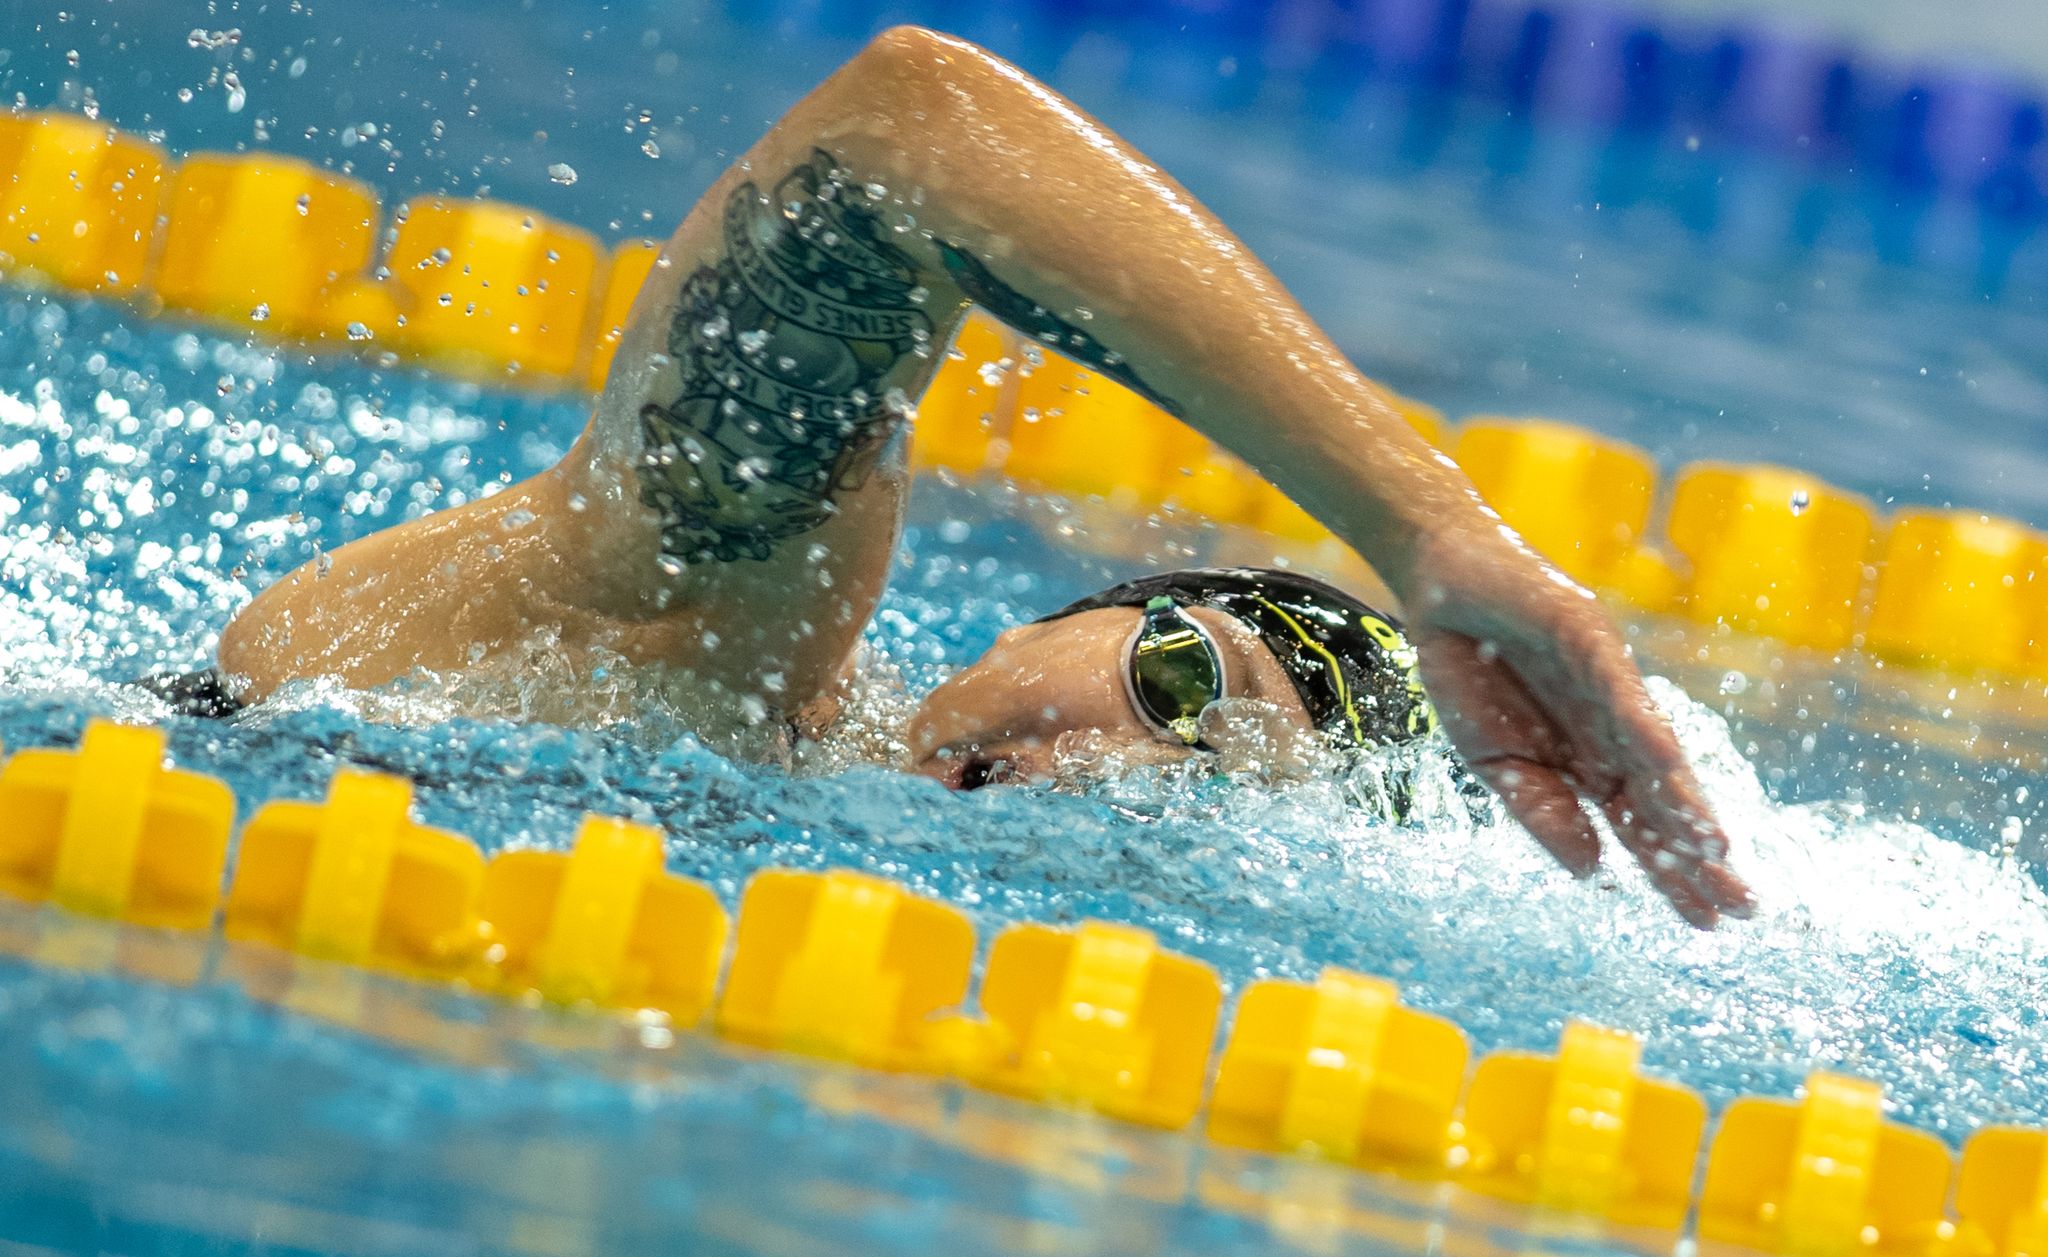 Schwimmerin Sarah Wellbrock verpasst die WM in Japan in diesem Jahr verletzungsbedingt.